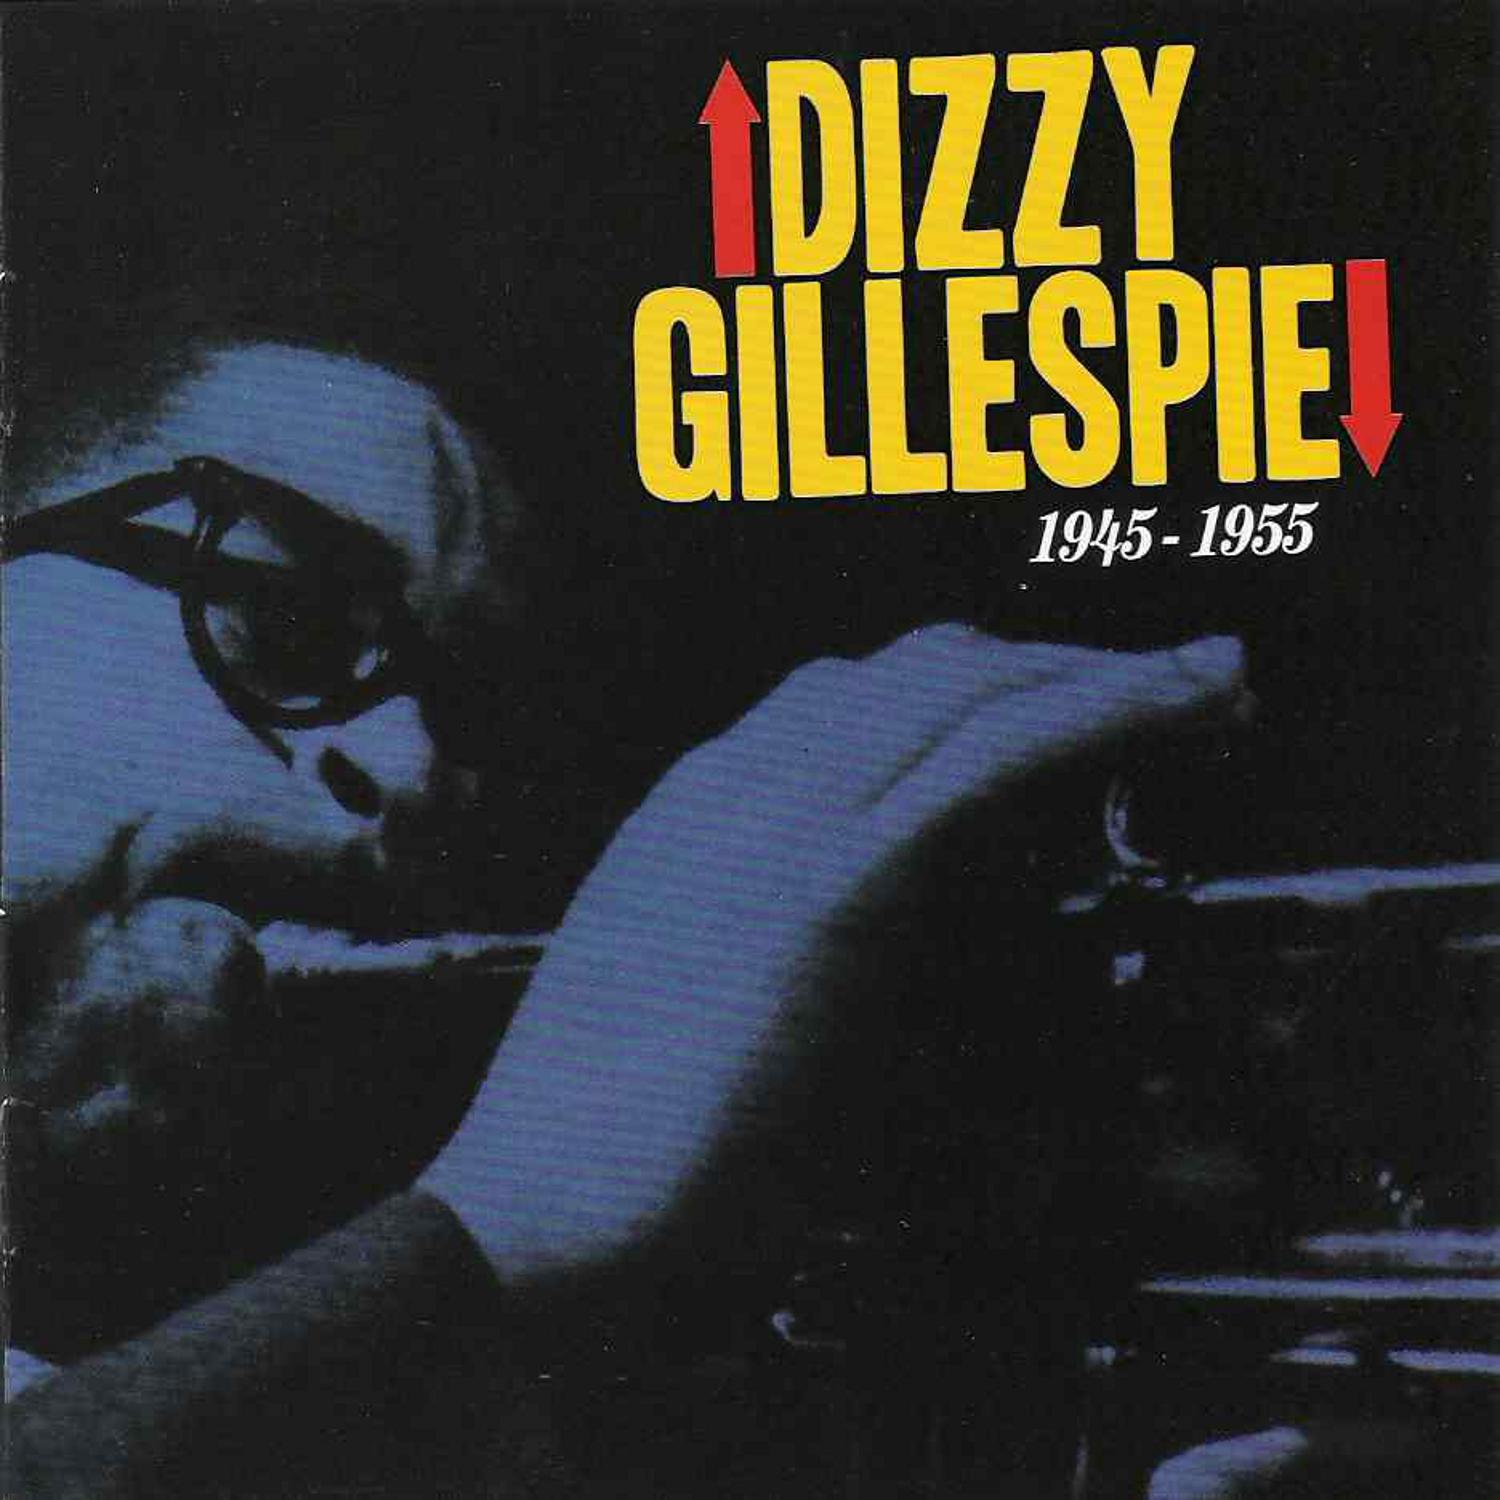 Grandes del Jazz 11, Vol.1 - Dizzy Gillespie 1945-1955